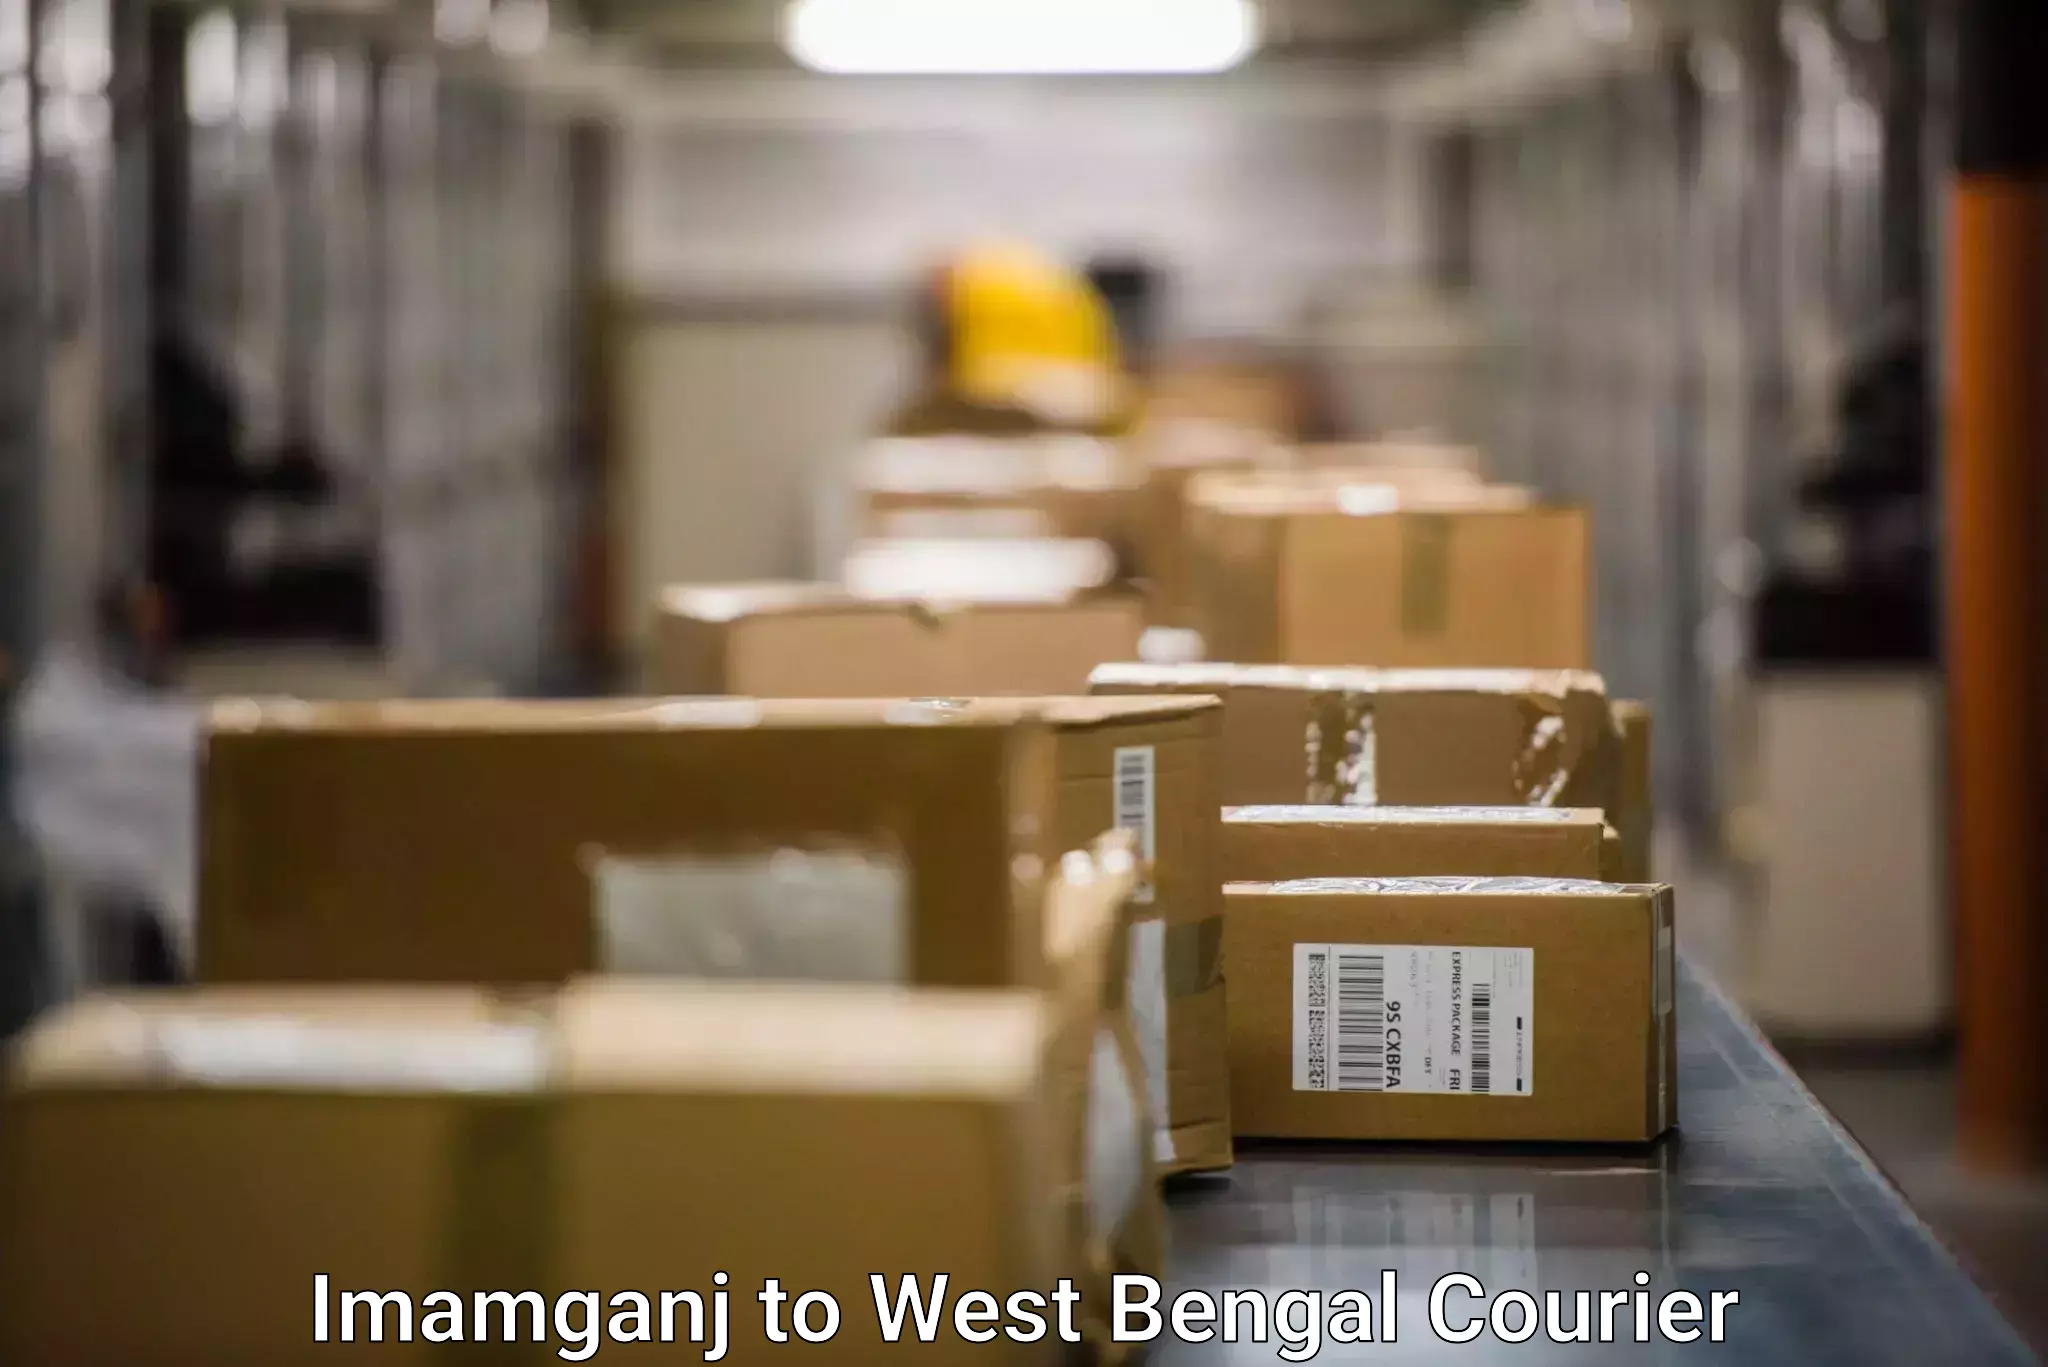 Professional courier handling Imamganj to Bongaon